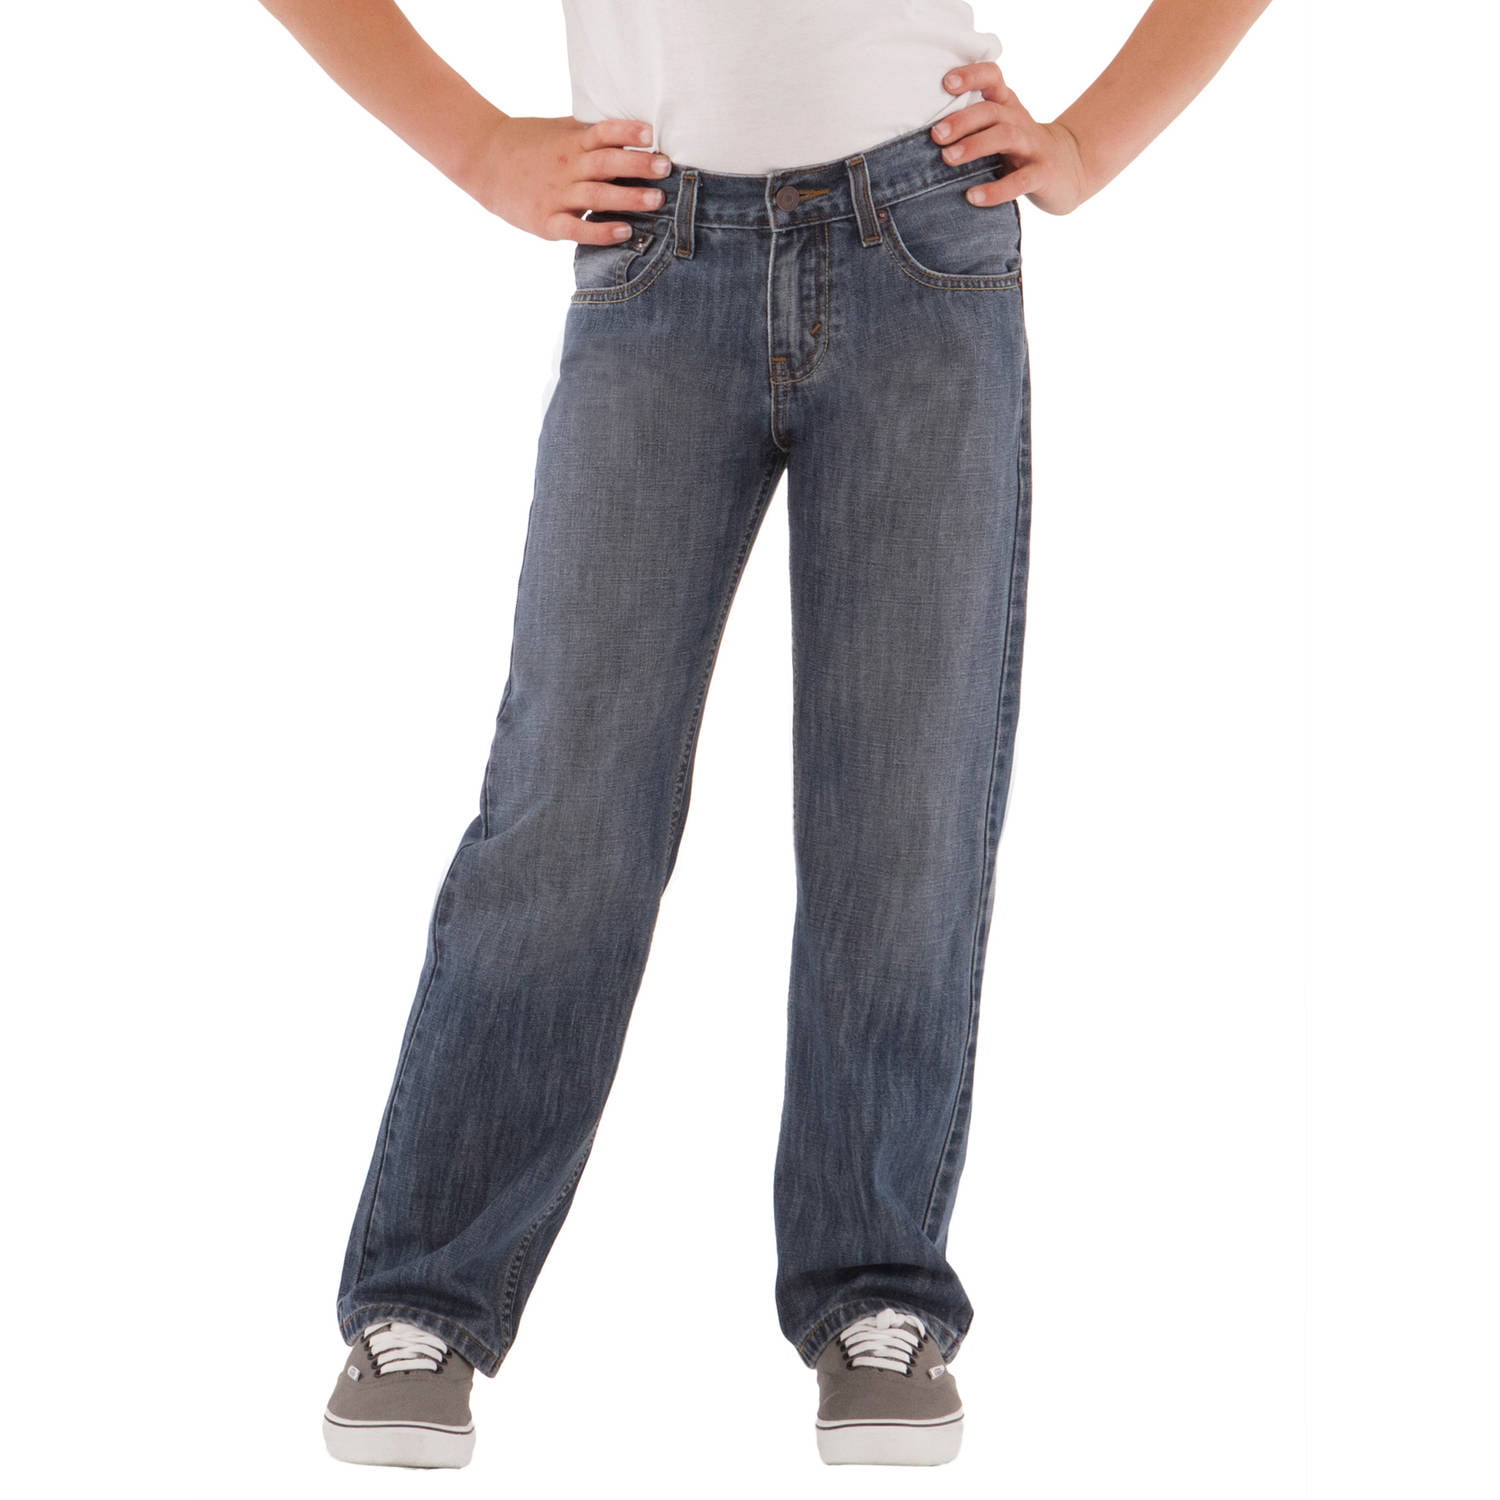 draggin jeans size chart